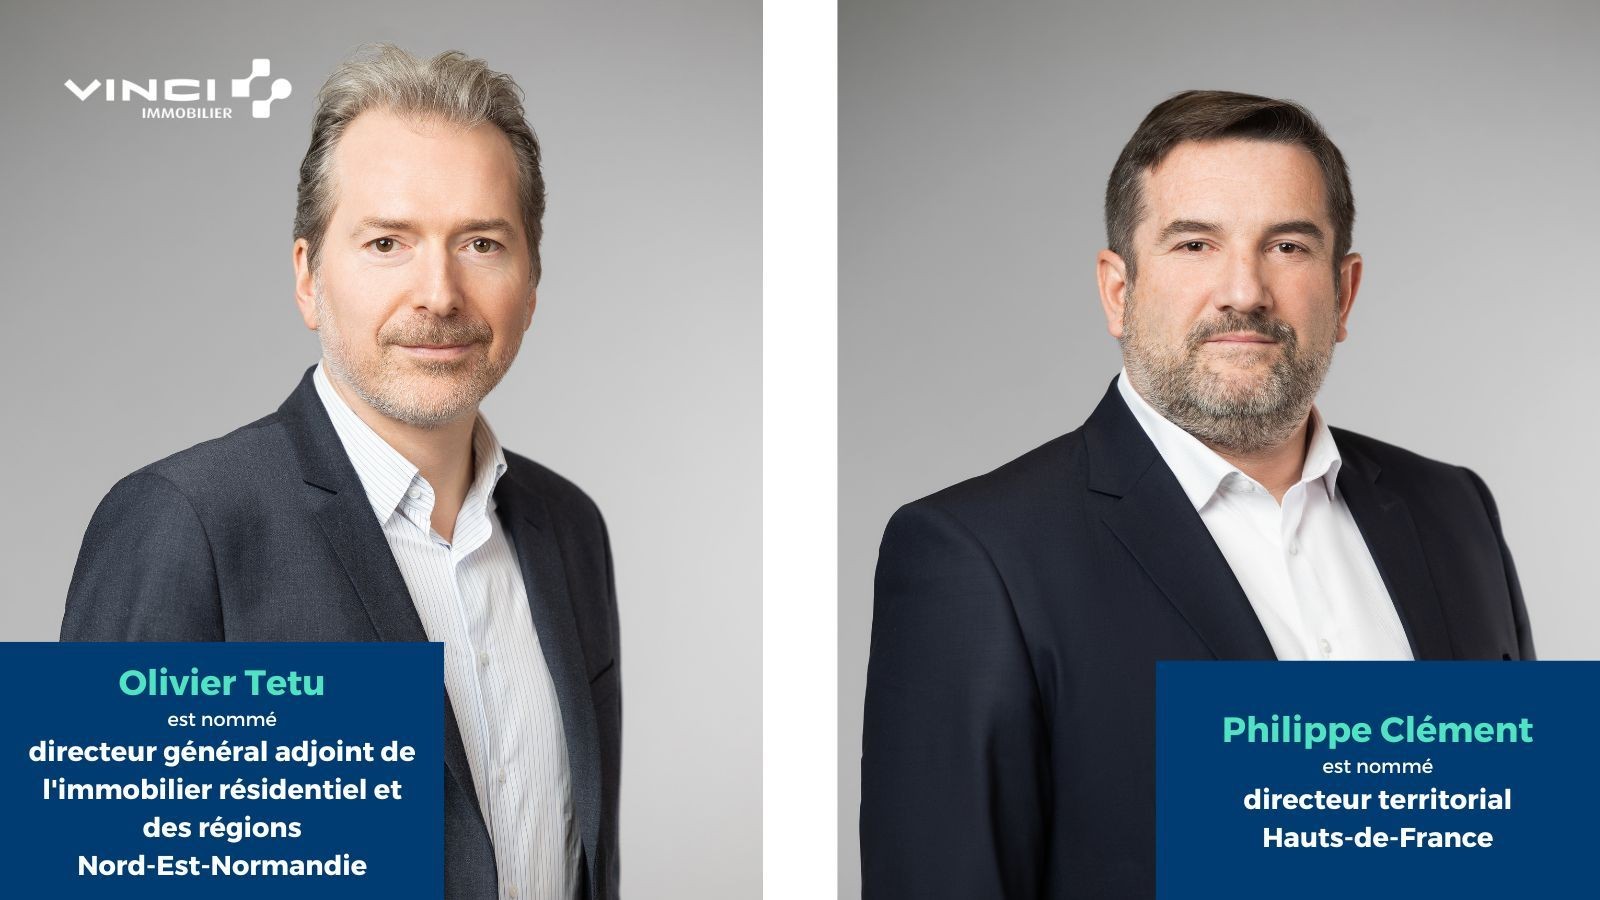 Olivier Têtu et Philippe Clément prennent la succession d'Alain Navello à la direction de Vinci Immobilier Nord Est Normandie.